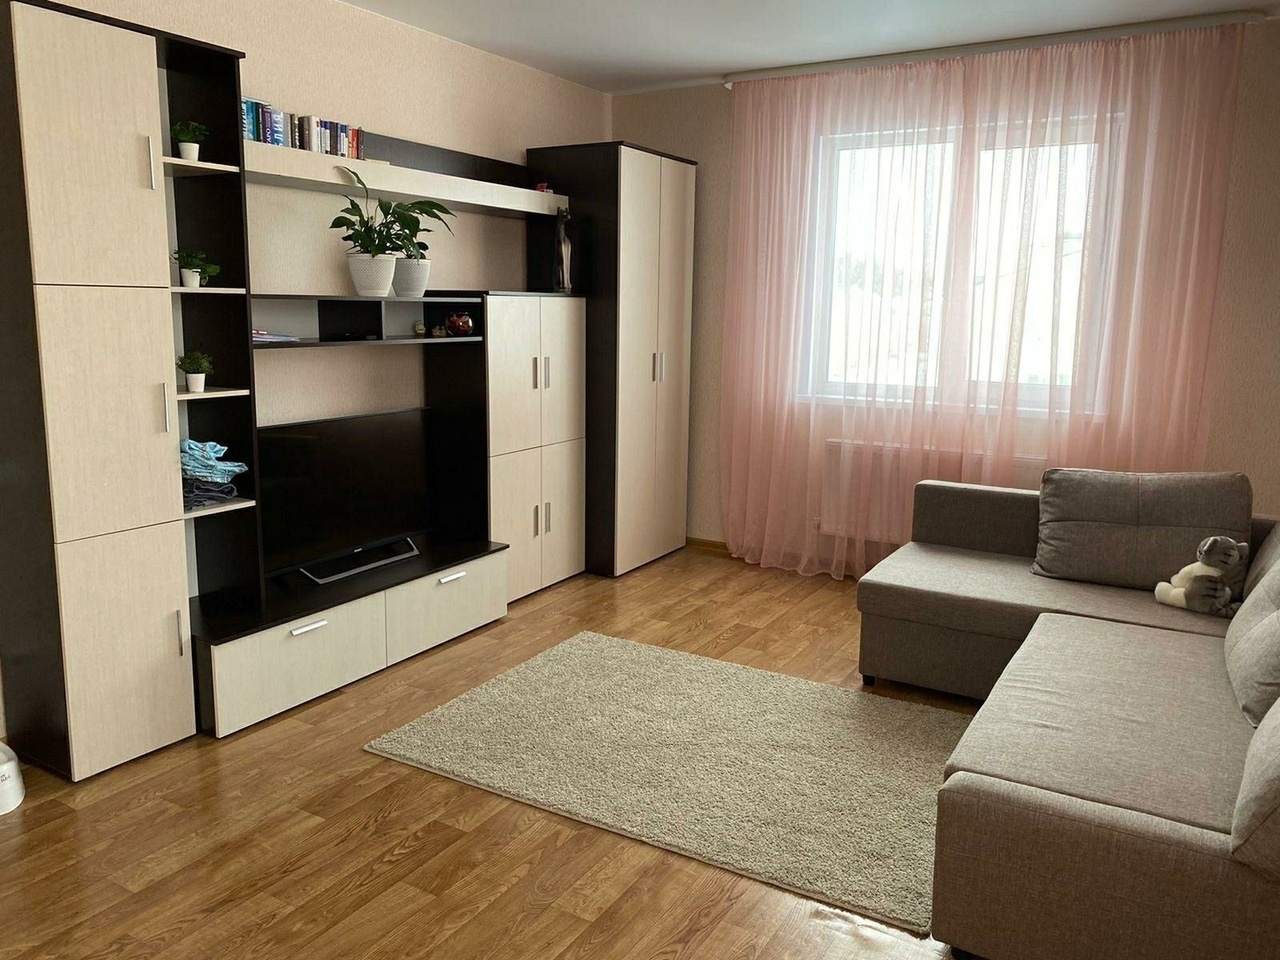 Сниму квартиру в элисте на длительный срок без посредников недорого 1 комнатную квартиру с мебелью